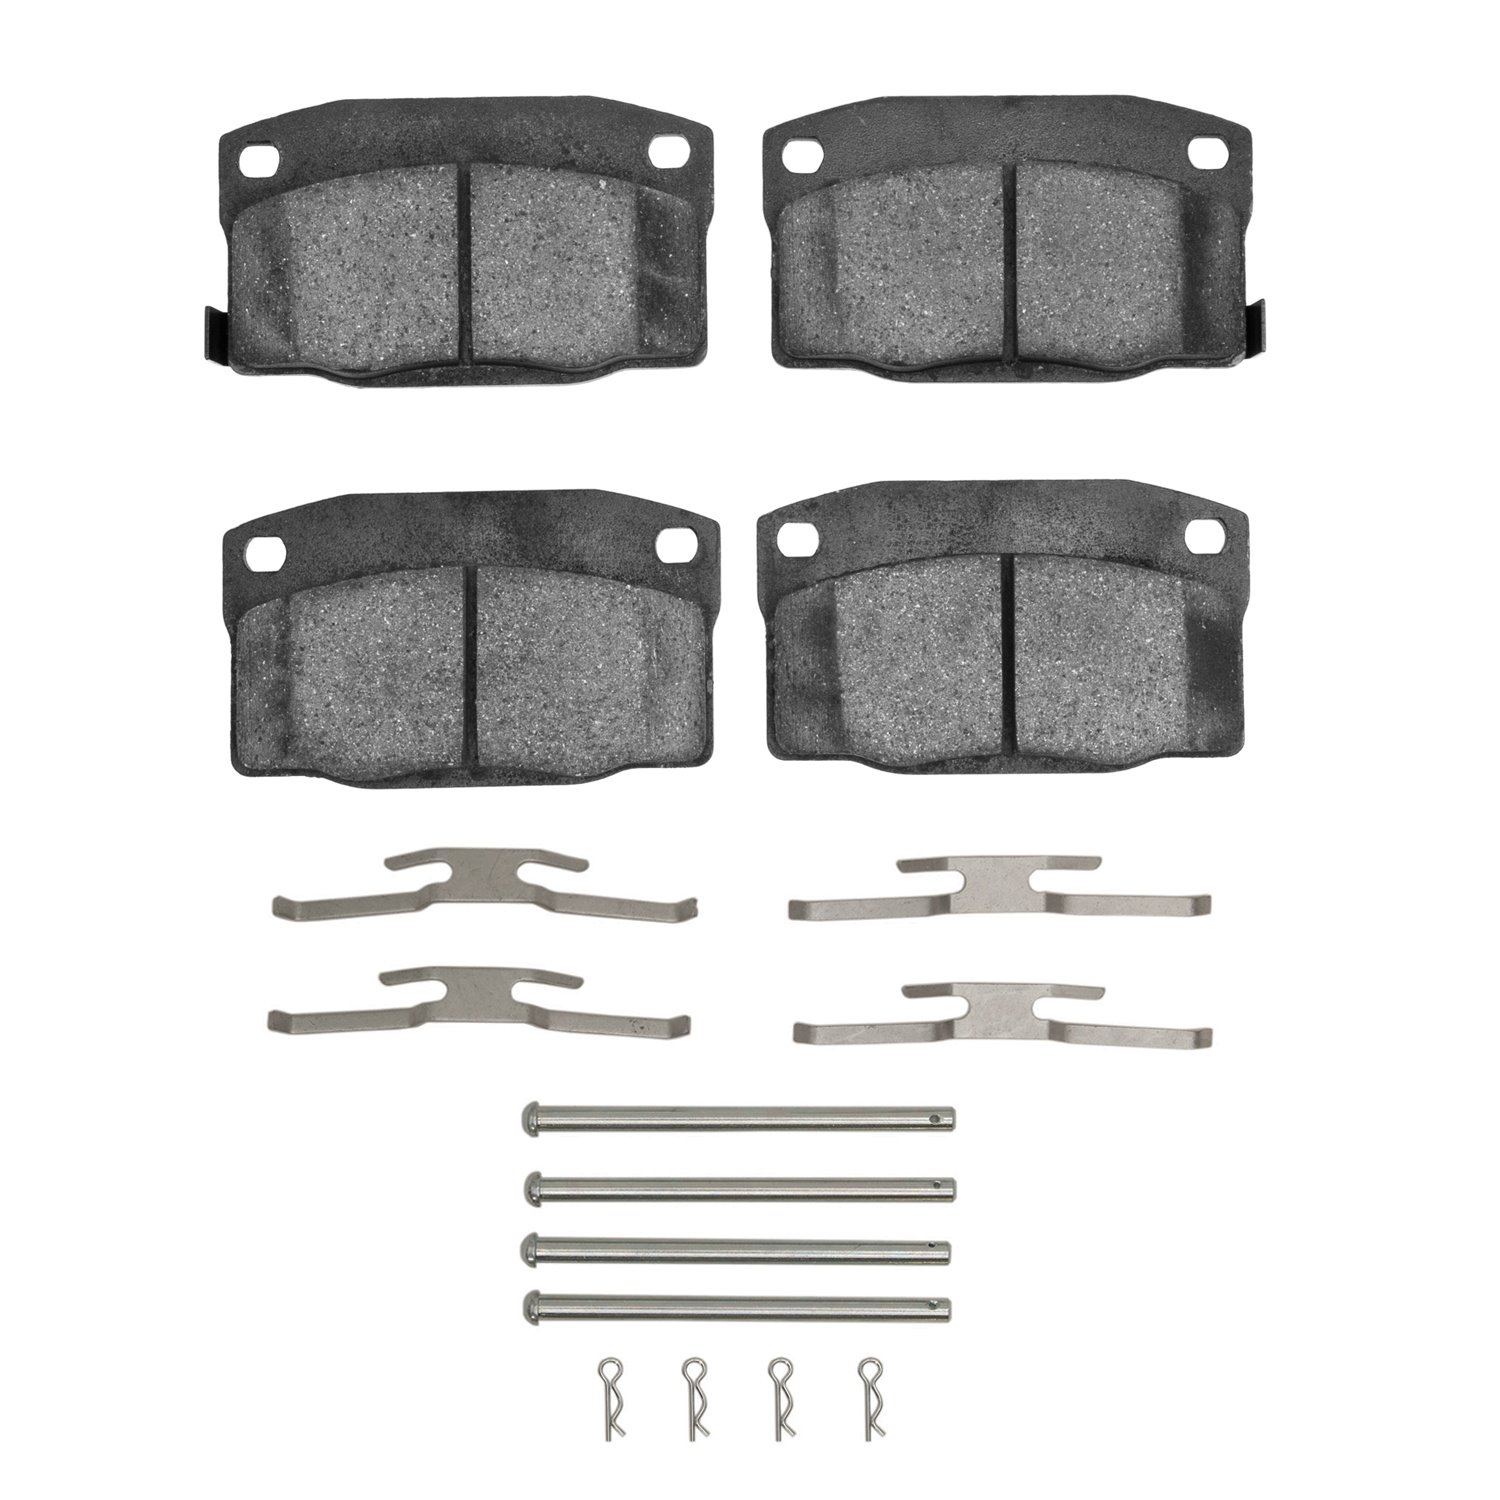 1310-0378-01 3000-Series Ceramic Brake Pads & Hardware Kit, 1988-1993 GM, Position: Front